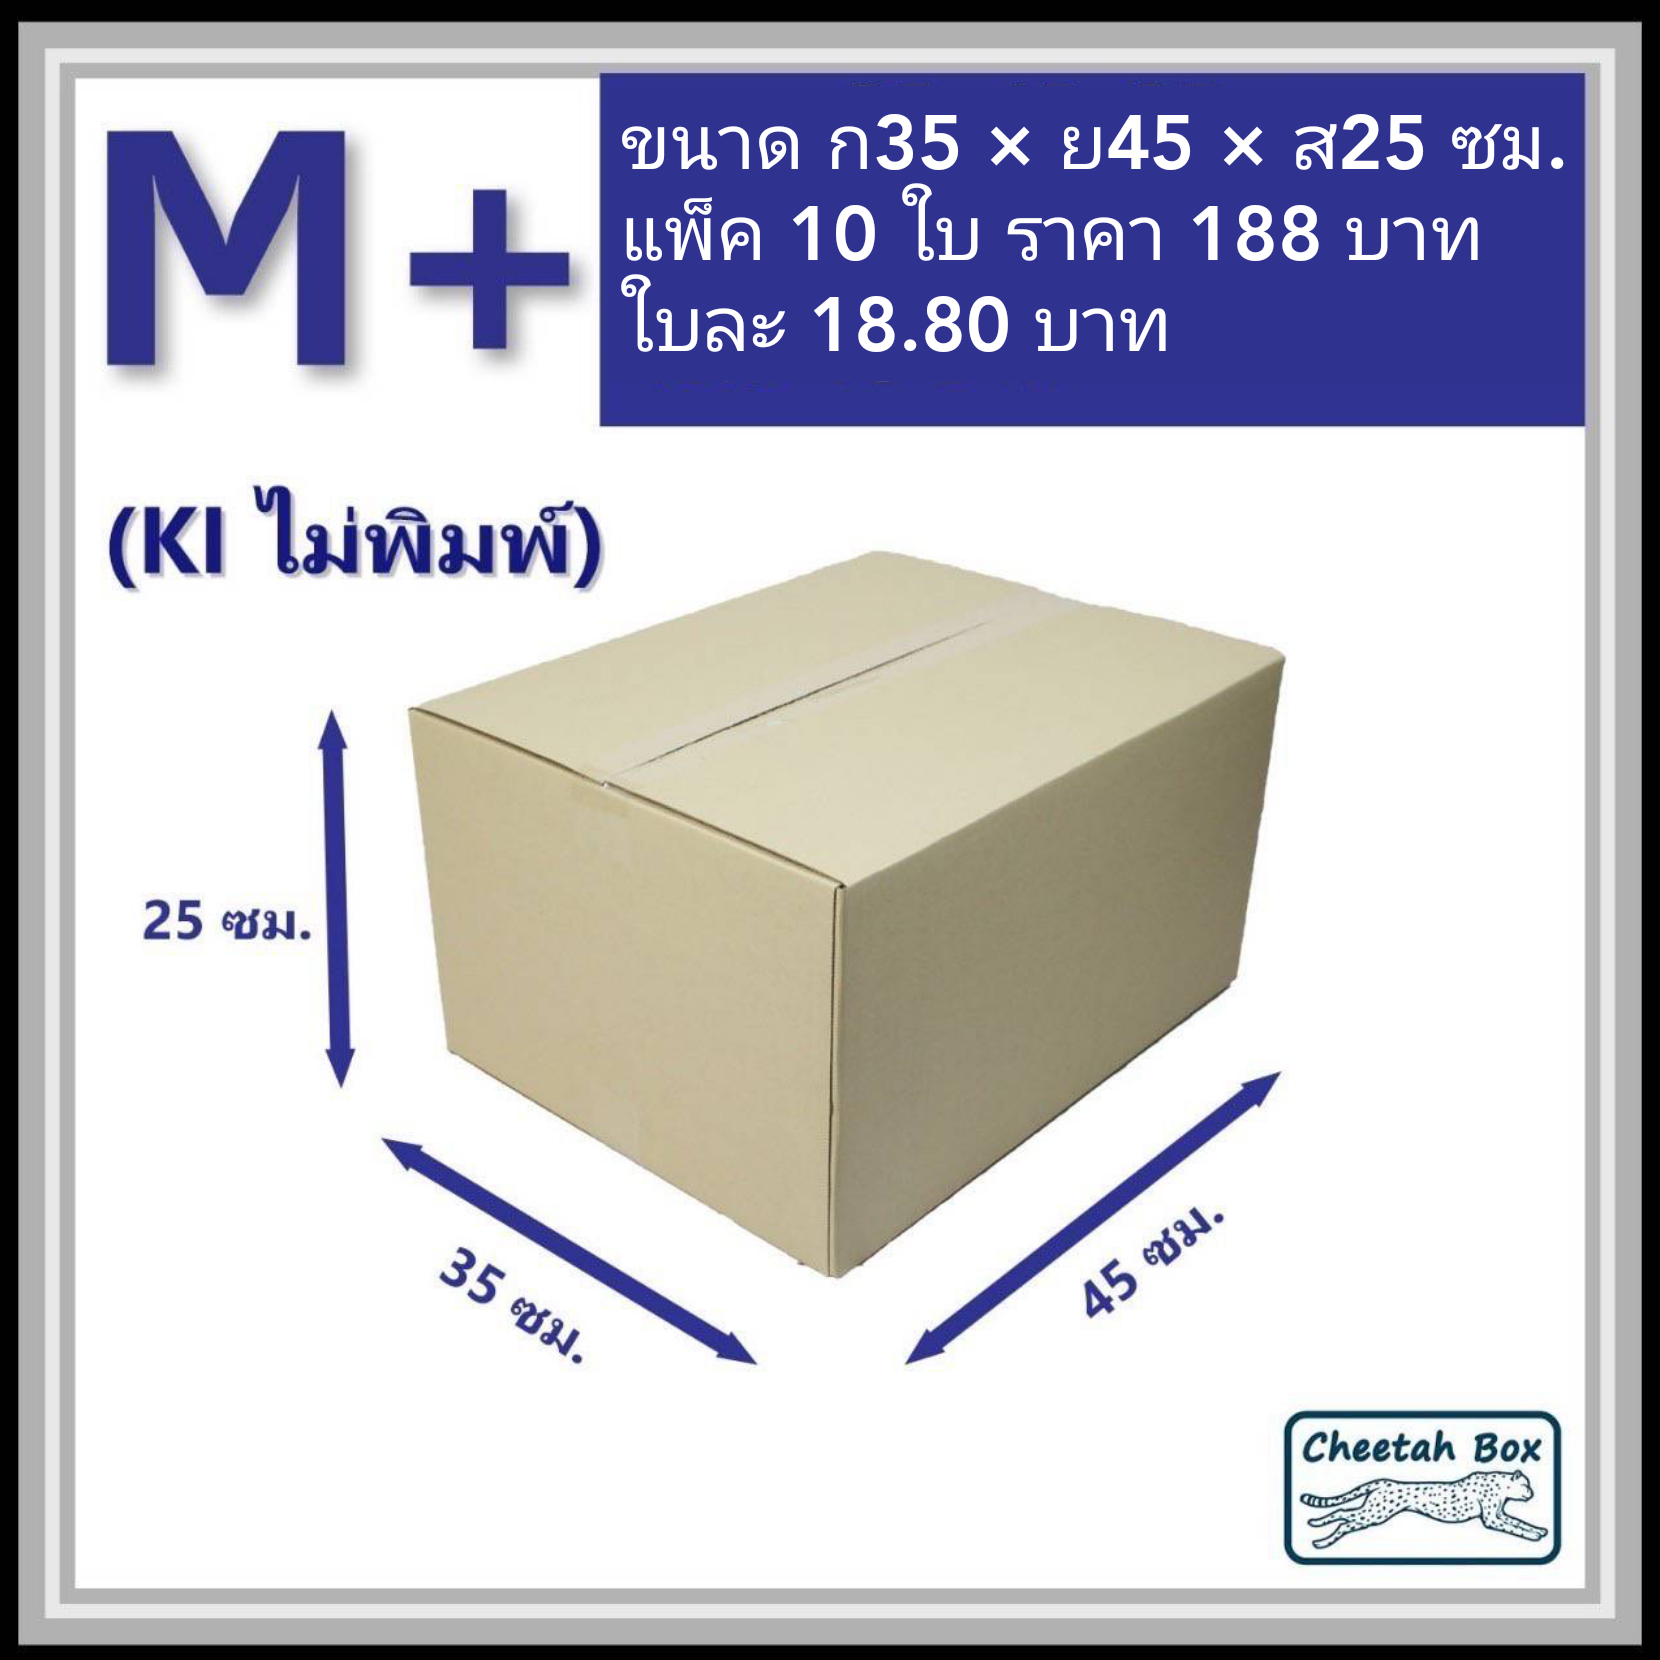 กล่องไปรษณีย์ ไม่พิมพ์ (M+) ลูกฟูก 3 ชั้น (Cheetah Box ขนาด 35*45*25 CM)